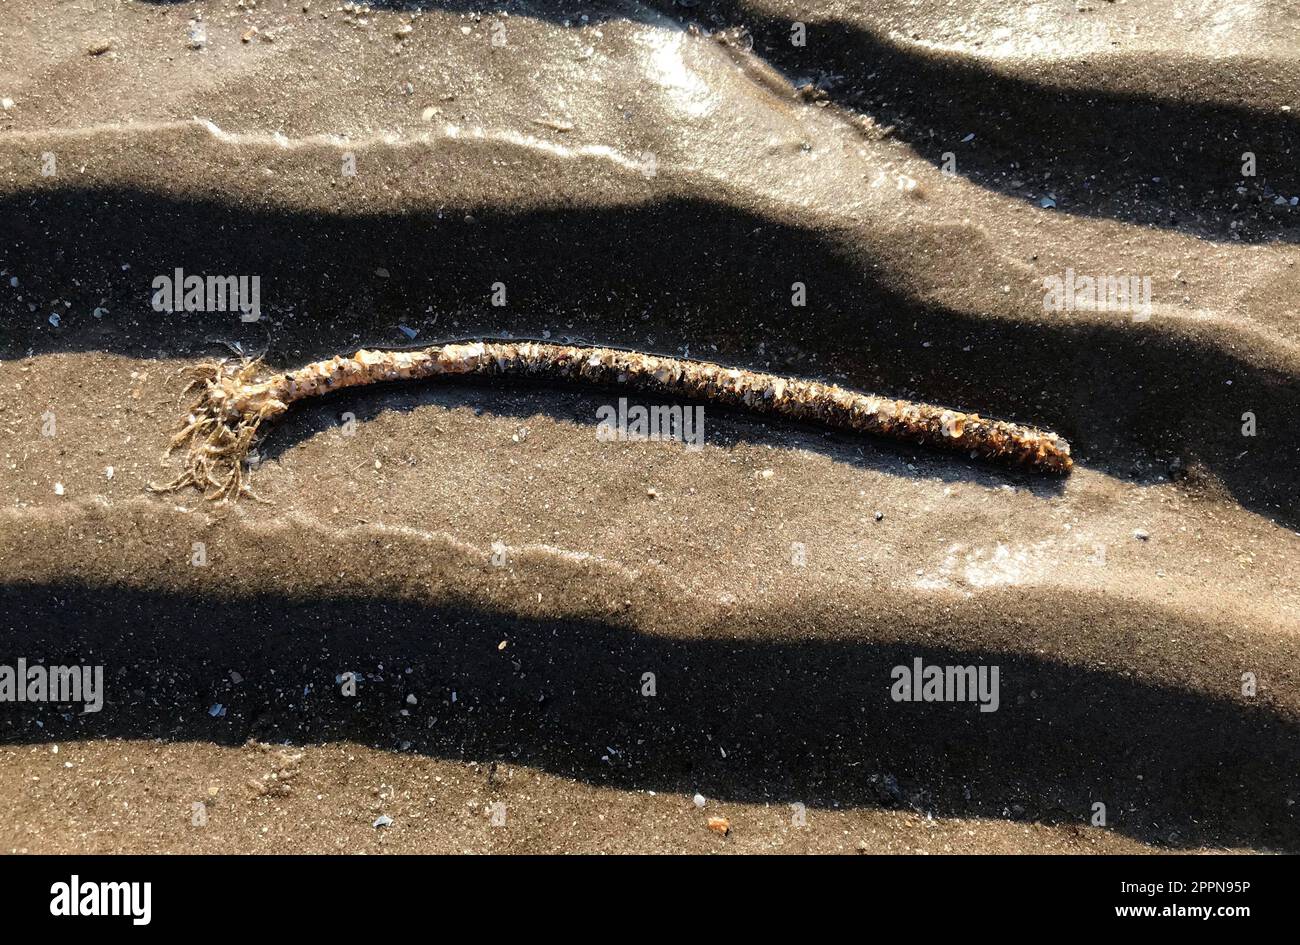 Sand mason worm, Lanice conchilega, specie di burrowing polychaete marino tubo parziale sulla spiaggia costituito da granelli di sabbia cementati e frammenti di conchiglie Foto Stock